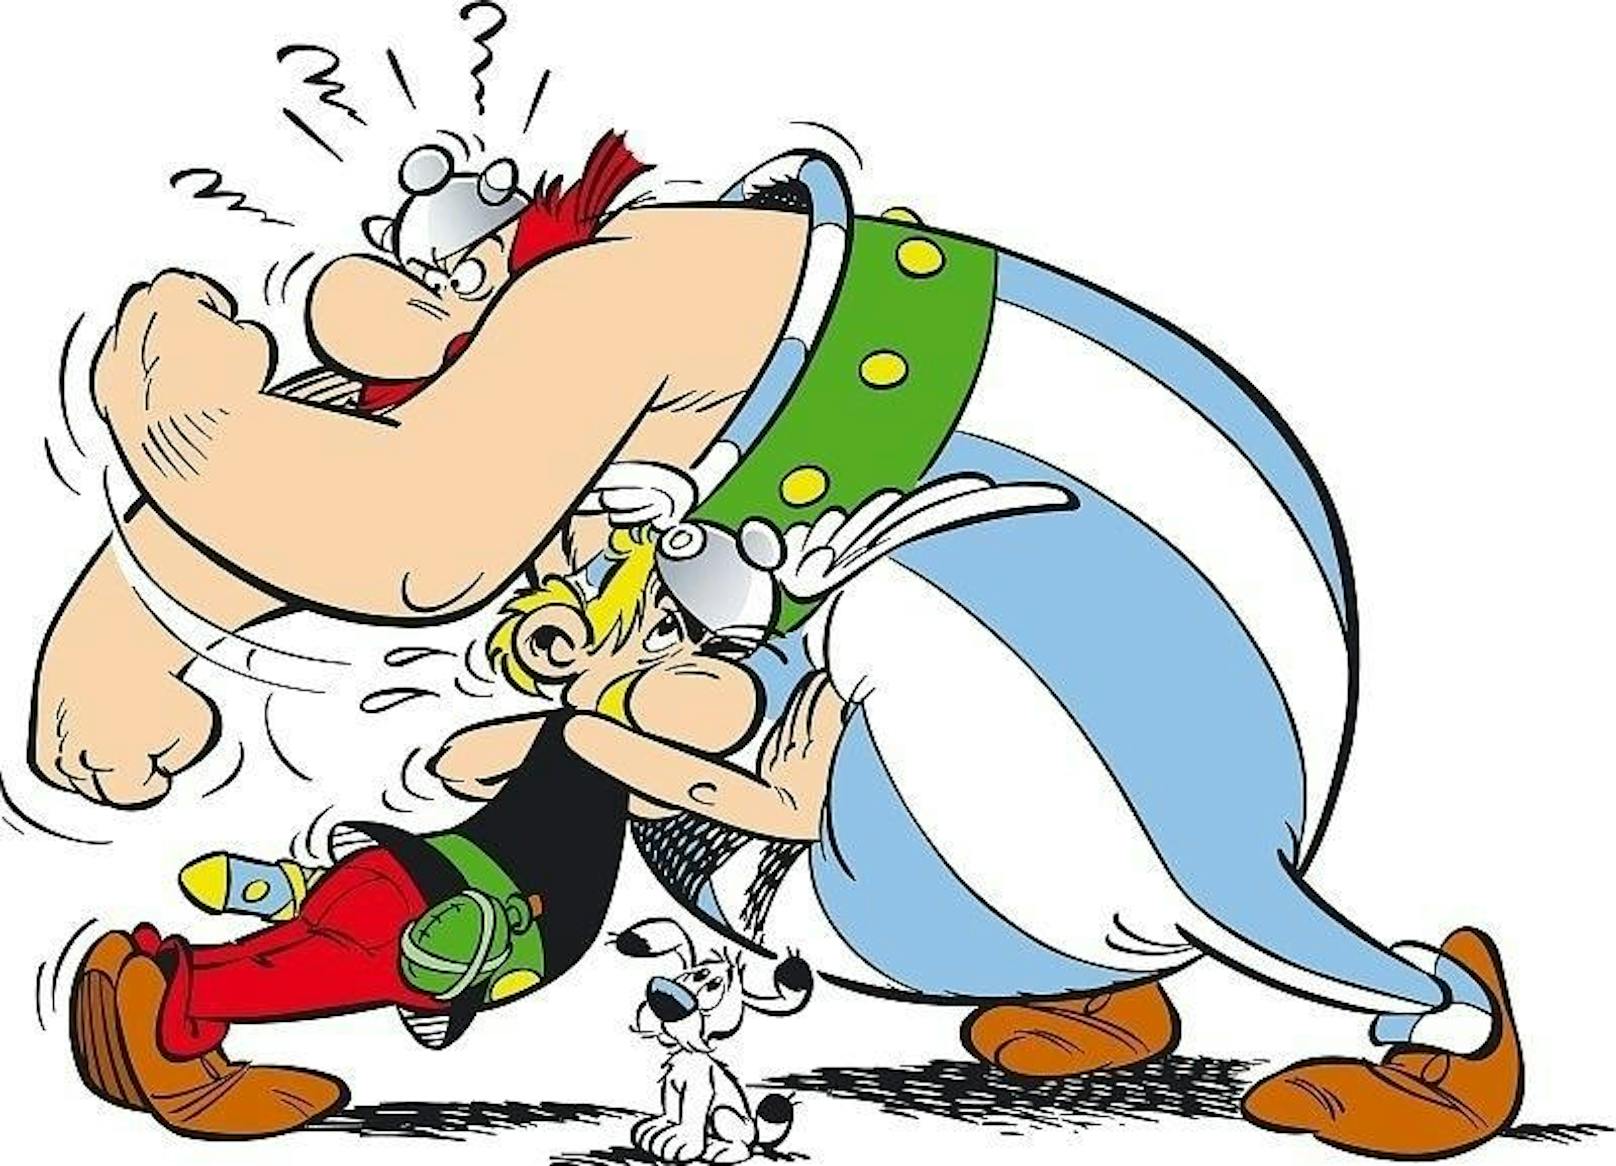 Bis heute werden die Asterix-Bände 2 bis 7 in der deutschsprachigen Ausgabe in anderer Reihenfolge als im französischen Original publiziert. 

Die tatsächliche Chronologie: 
2 Die goldene Sichel (im Deutschen: 5)
3 Asterix und die Goten (7)
4 Asterix als Gladiator (3)
5 Tour de France (6)
6 Asterix und Kleopatra (2)
7 Der Kampf der Häuptlinge (4)